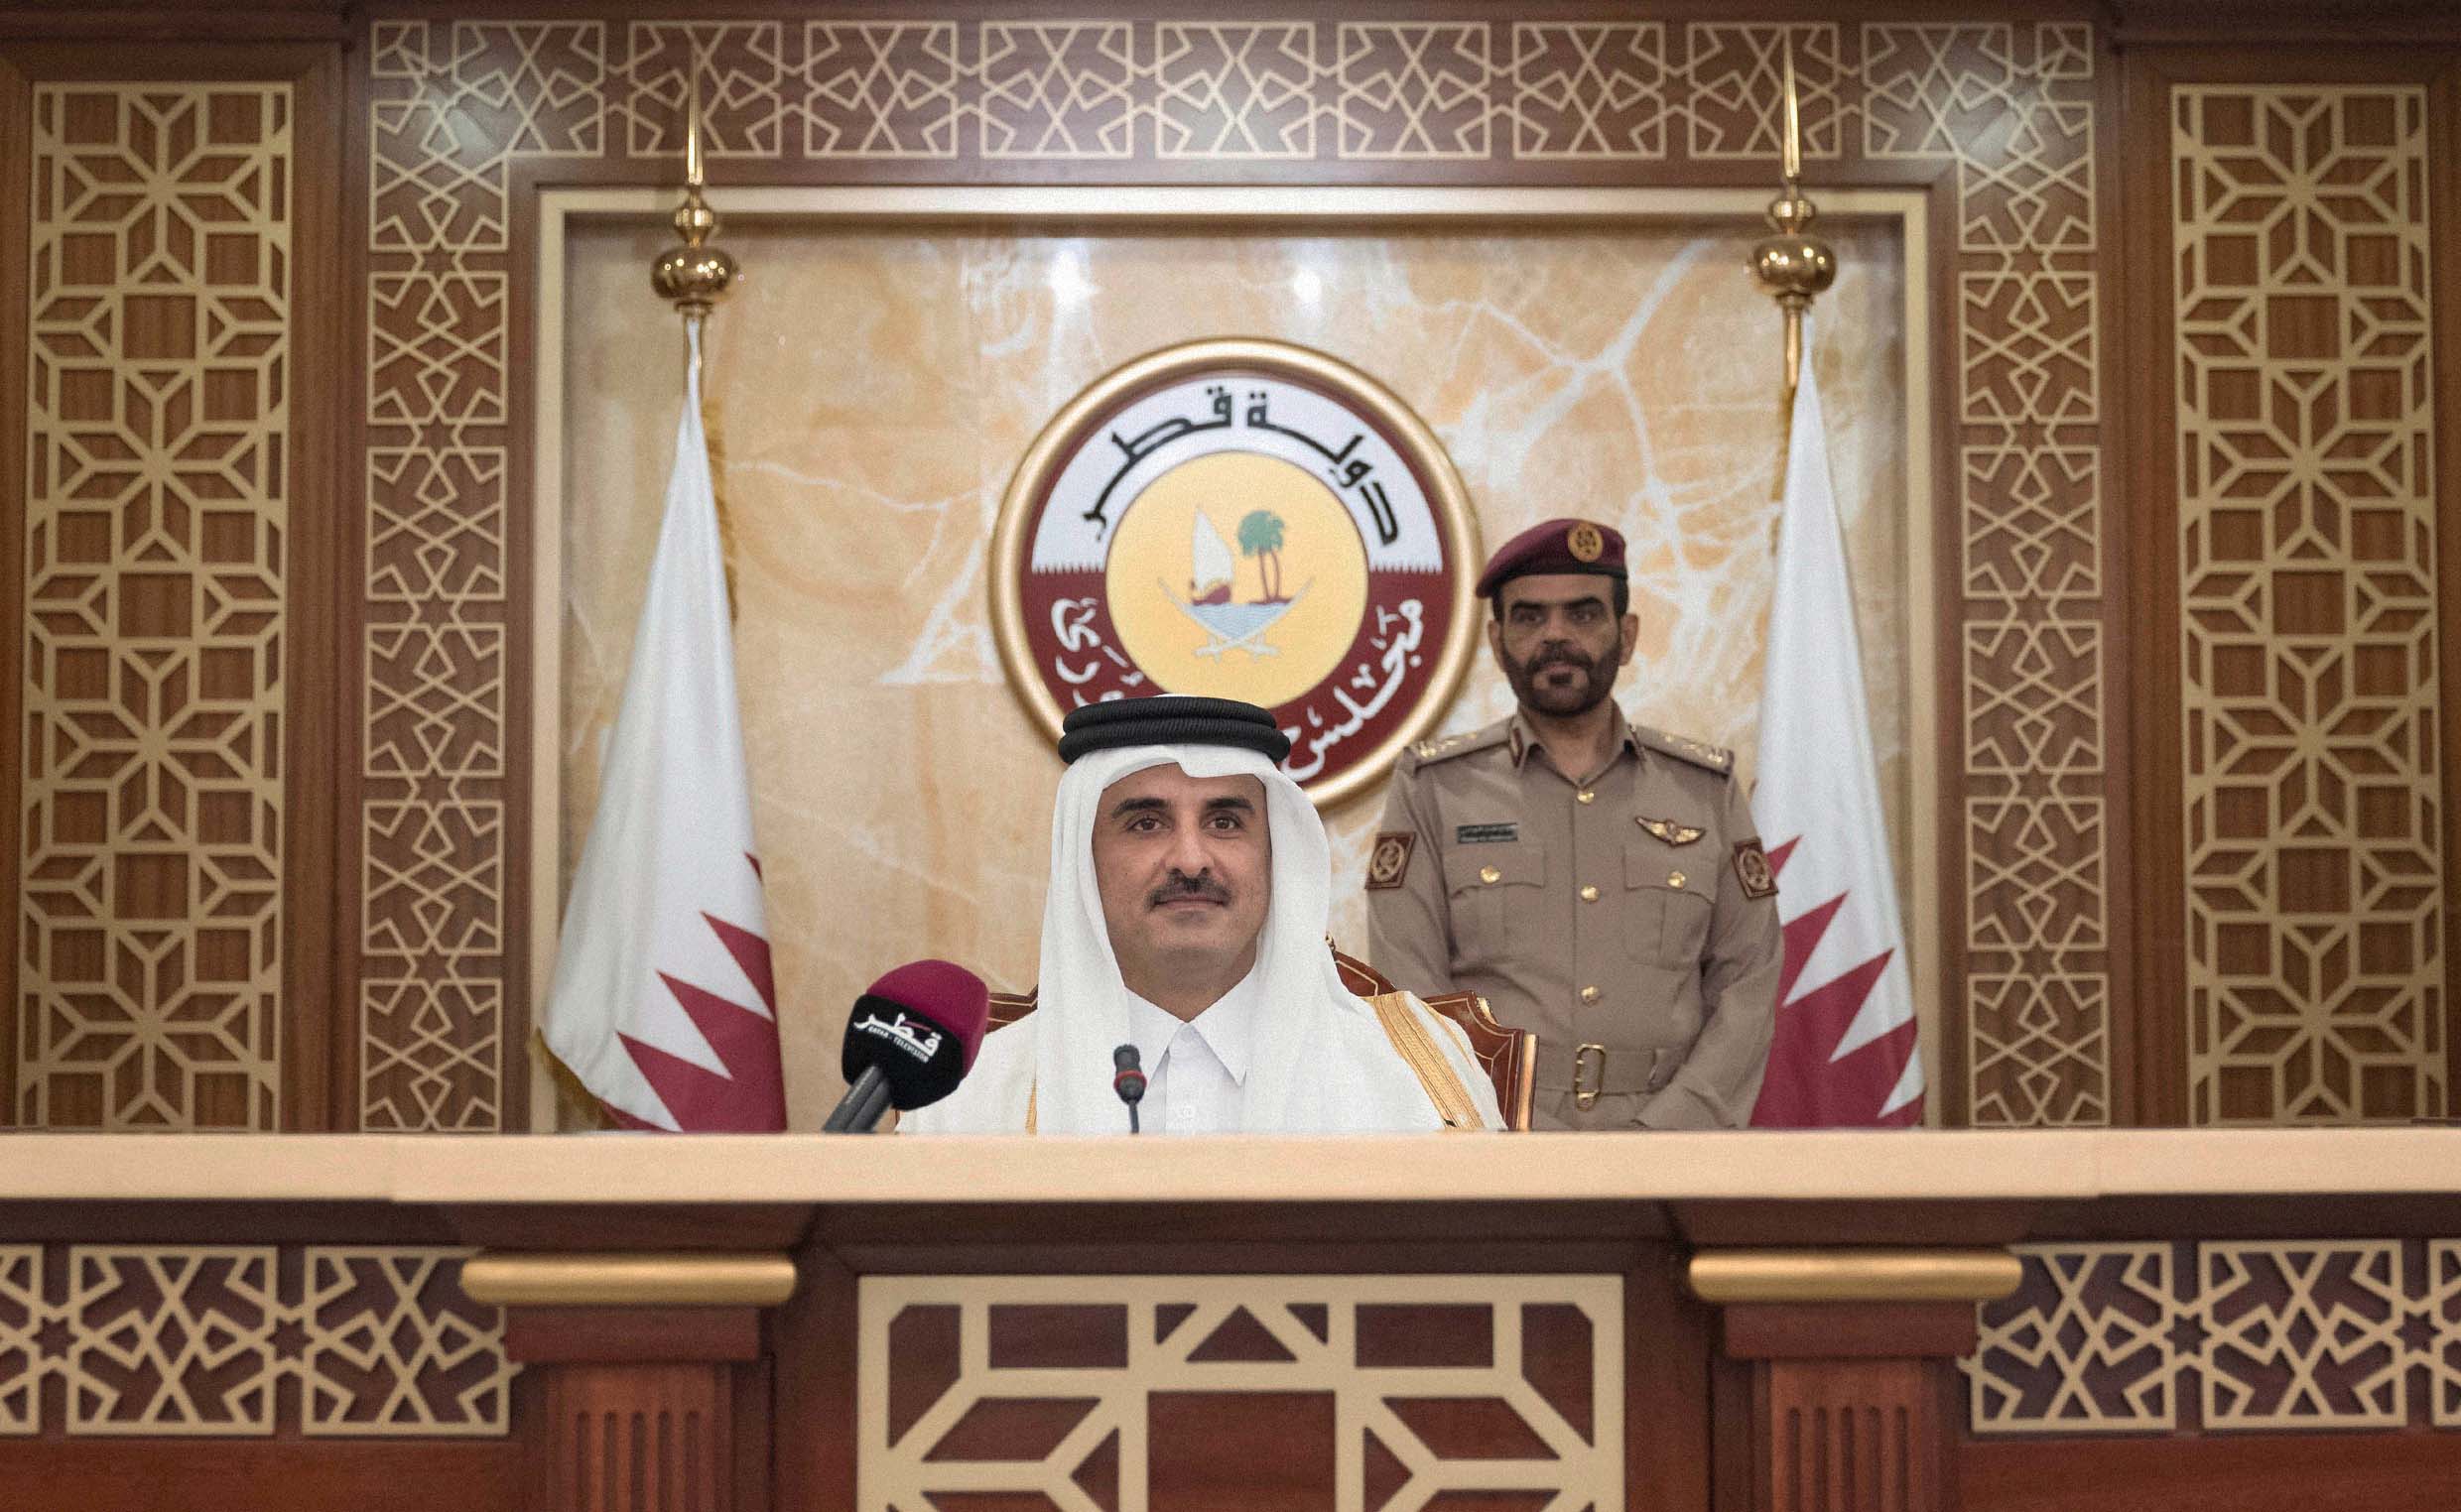 صورة قطر تنظم انتخابات تشريعية تتيح لـ٥٪ من الـ١٠٪ القطريين الانتخاب